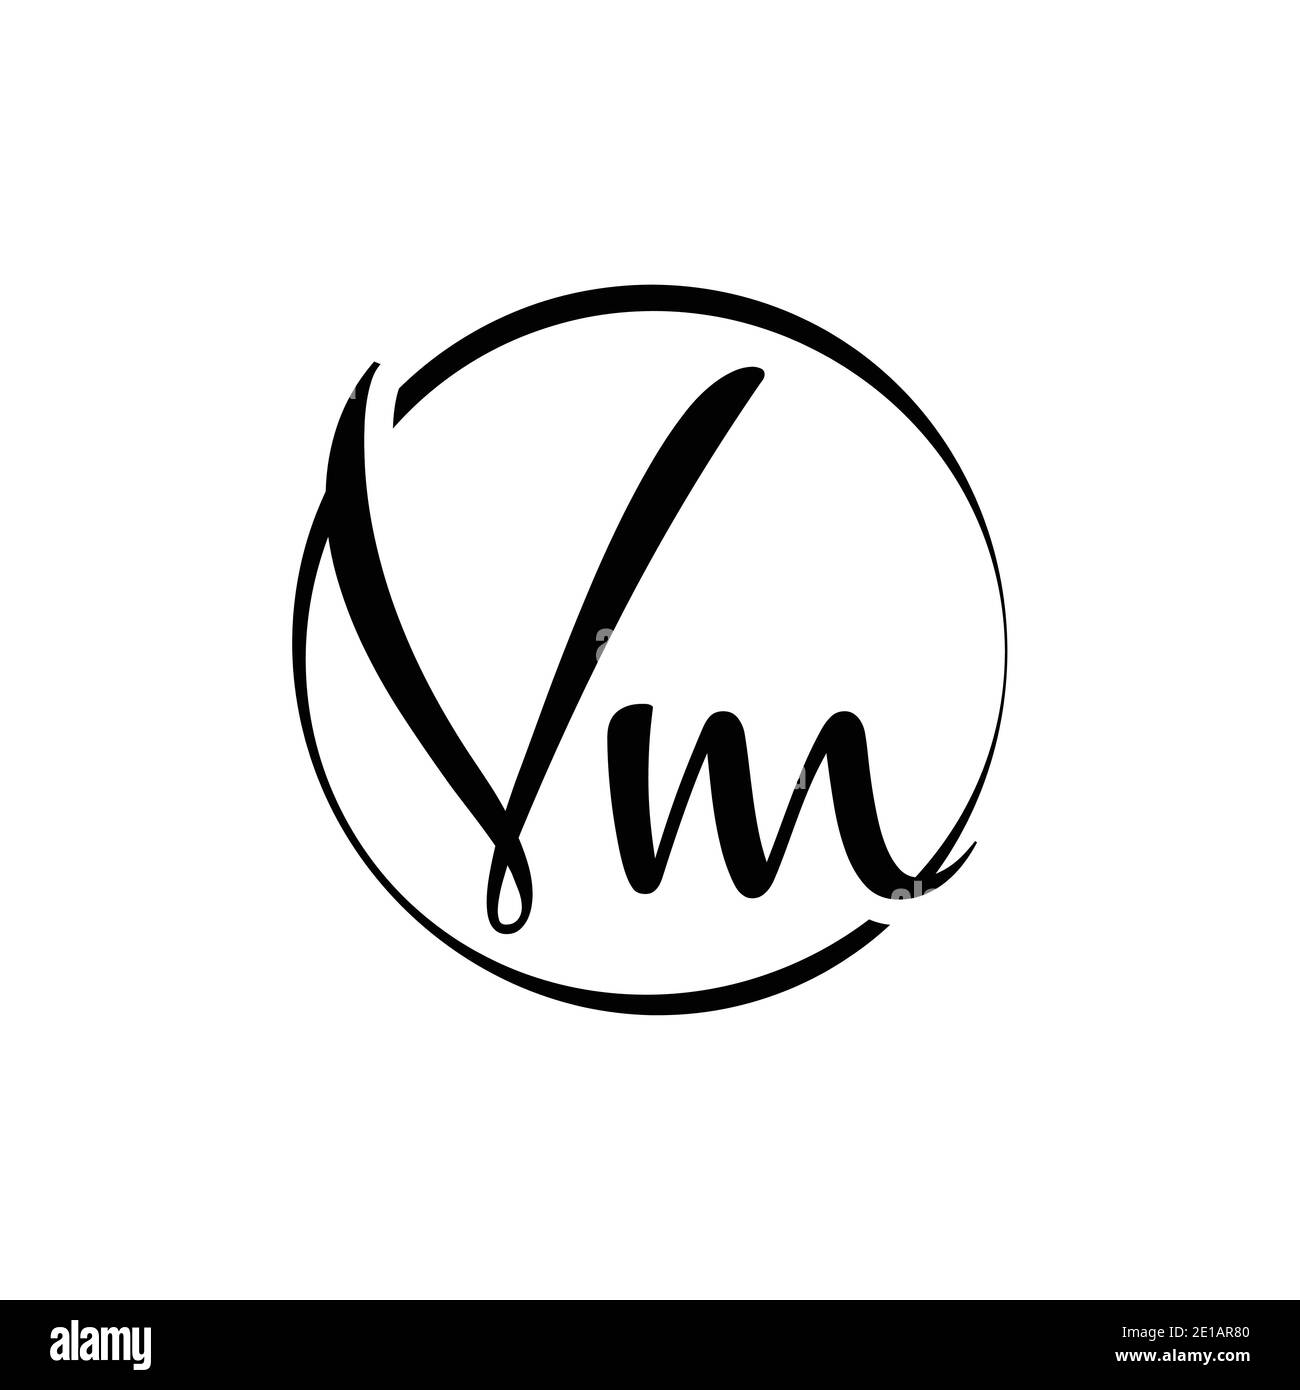 Lv Logo Vector Design Images, Initial Letter Lv Logo Template, Abstract,  Logo, Template PNG Image For Free Download